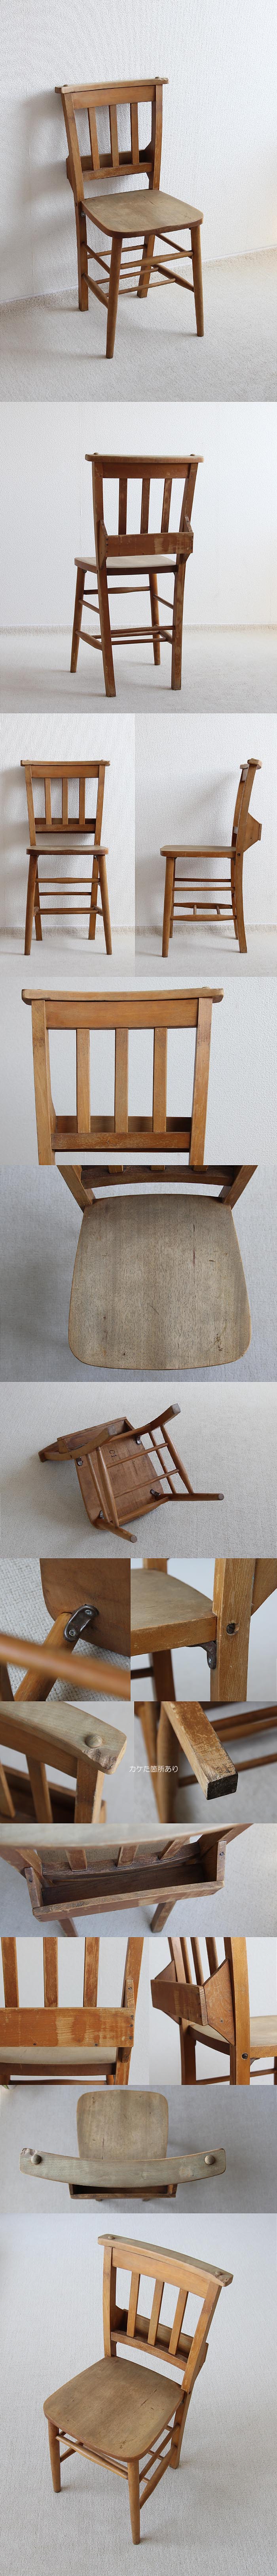 イギリス アンティーク調 チャーチチェア 教会椅子 カントリー インテリア 家具「聖書BOX付」P-160